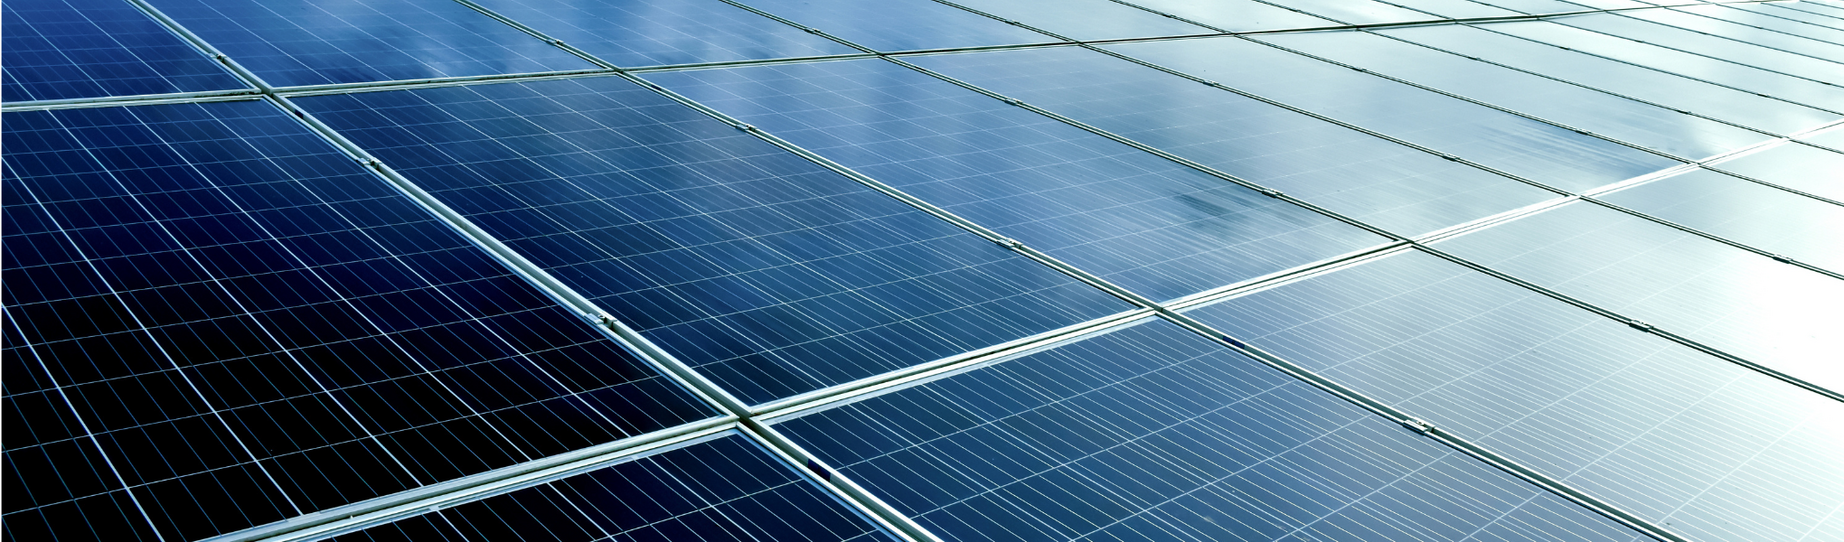 Les nouveaux tarifs et primes relatifs aux installations photovoltaïques